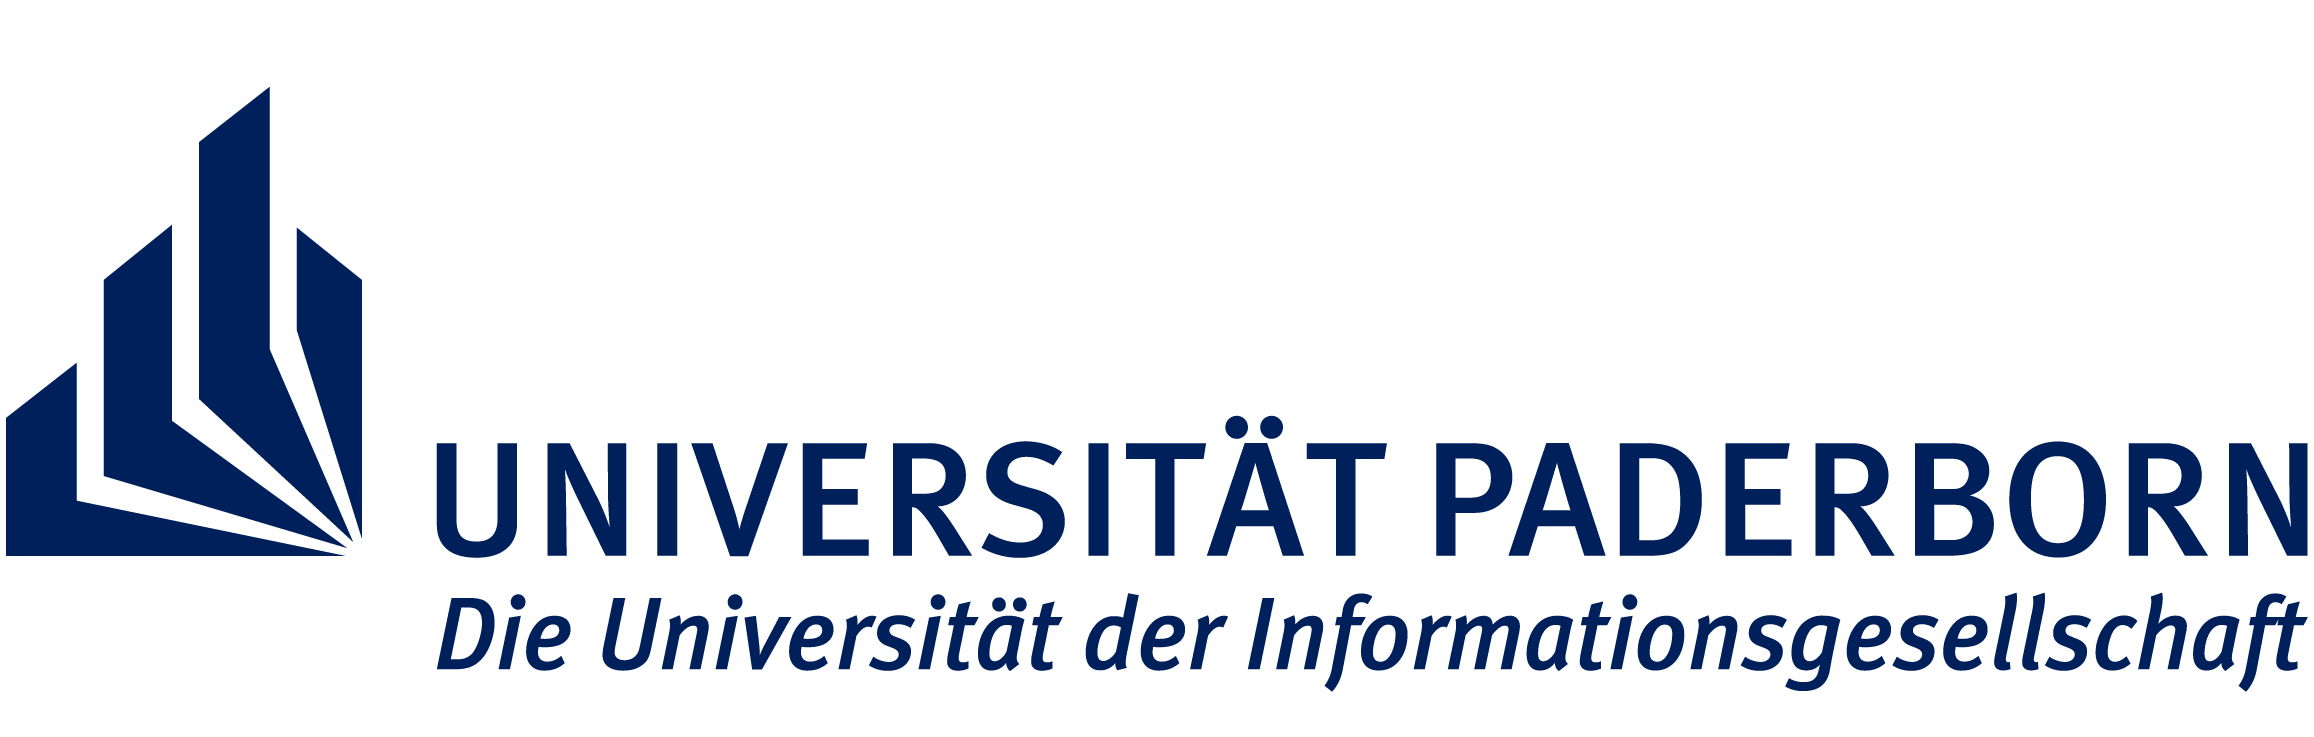 PC2 Uni Paderborn